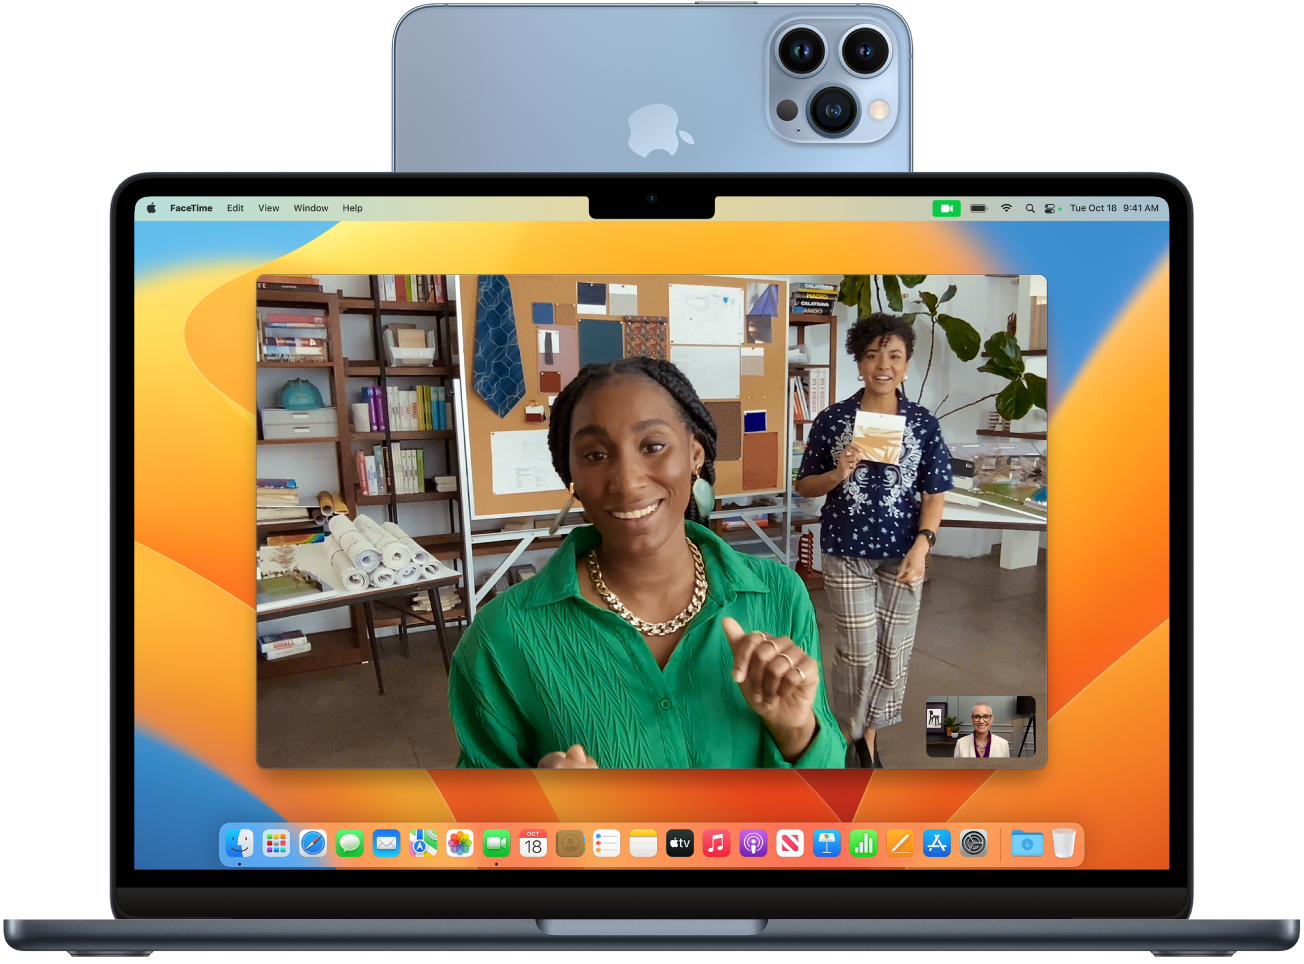 ဖန်သားပြင်ထိပ်တွင် တပ်ဆင်ထားပြီး ဝက်ဘ်ကင်မရာအဖြစ် အသုံးပြုနေသည့် iPhone ပါသော Mac တစ်ခု။ iPhone ကင်မရာမှ ရုပ်ပုံကို Mac ၏ မျက်နှာပြင်တွင် မြင်နိုင်မည်ဖြစ်သည်။